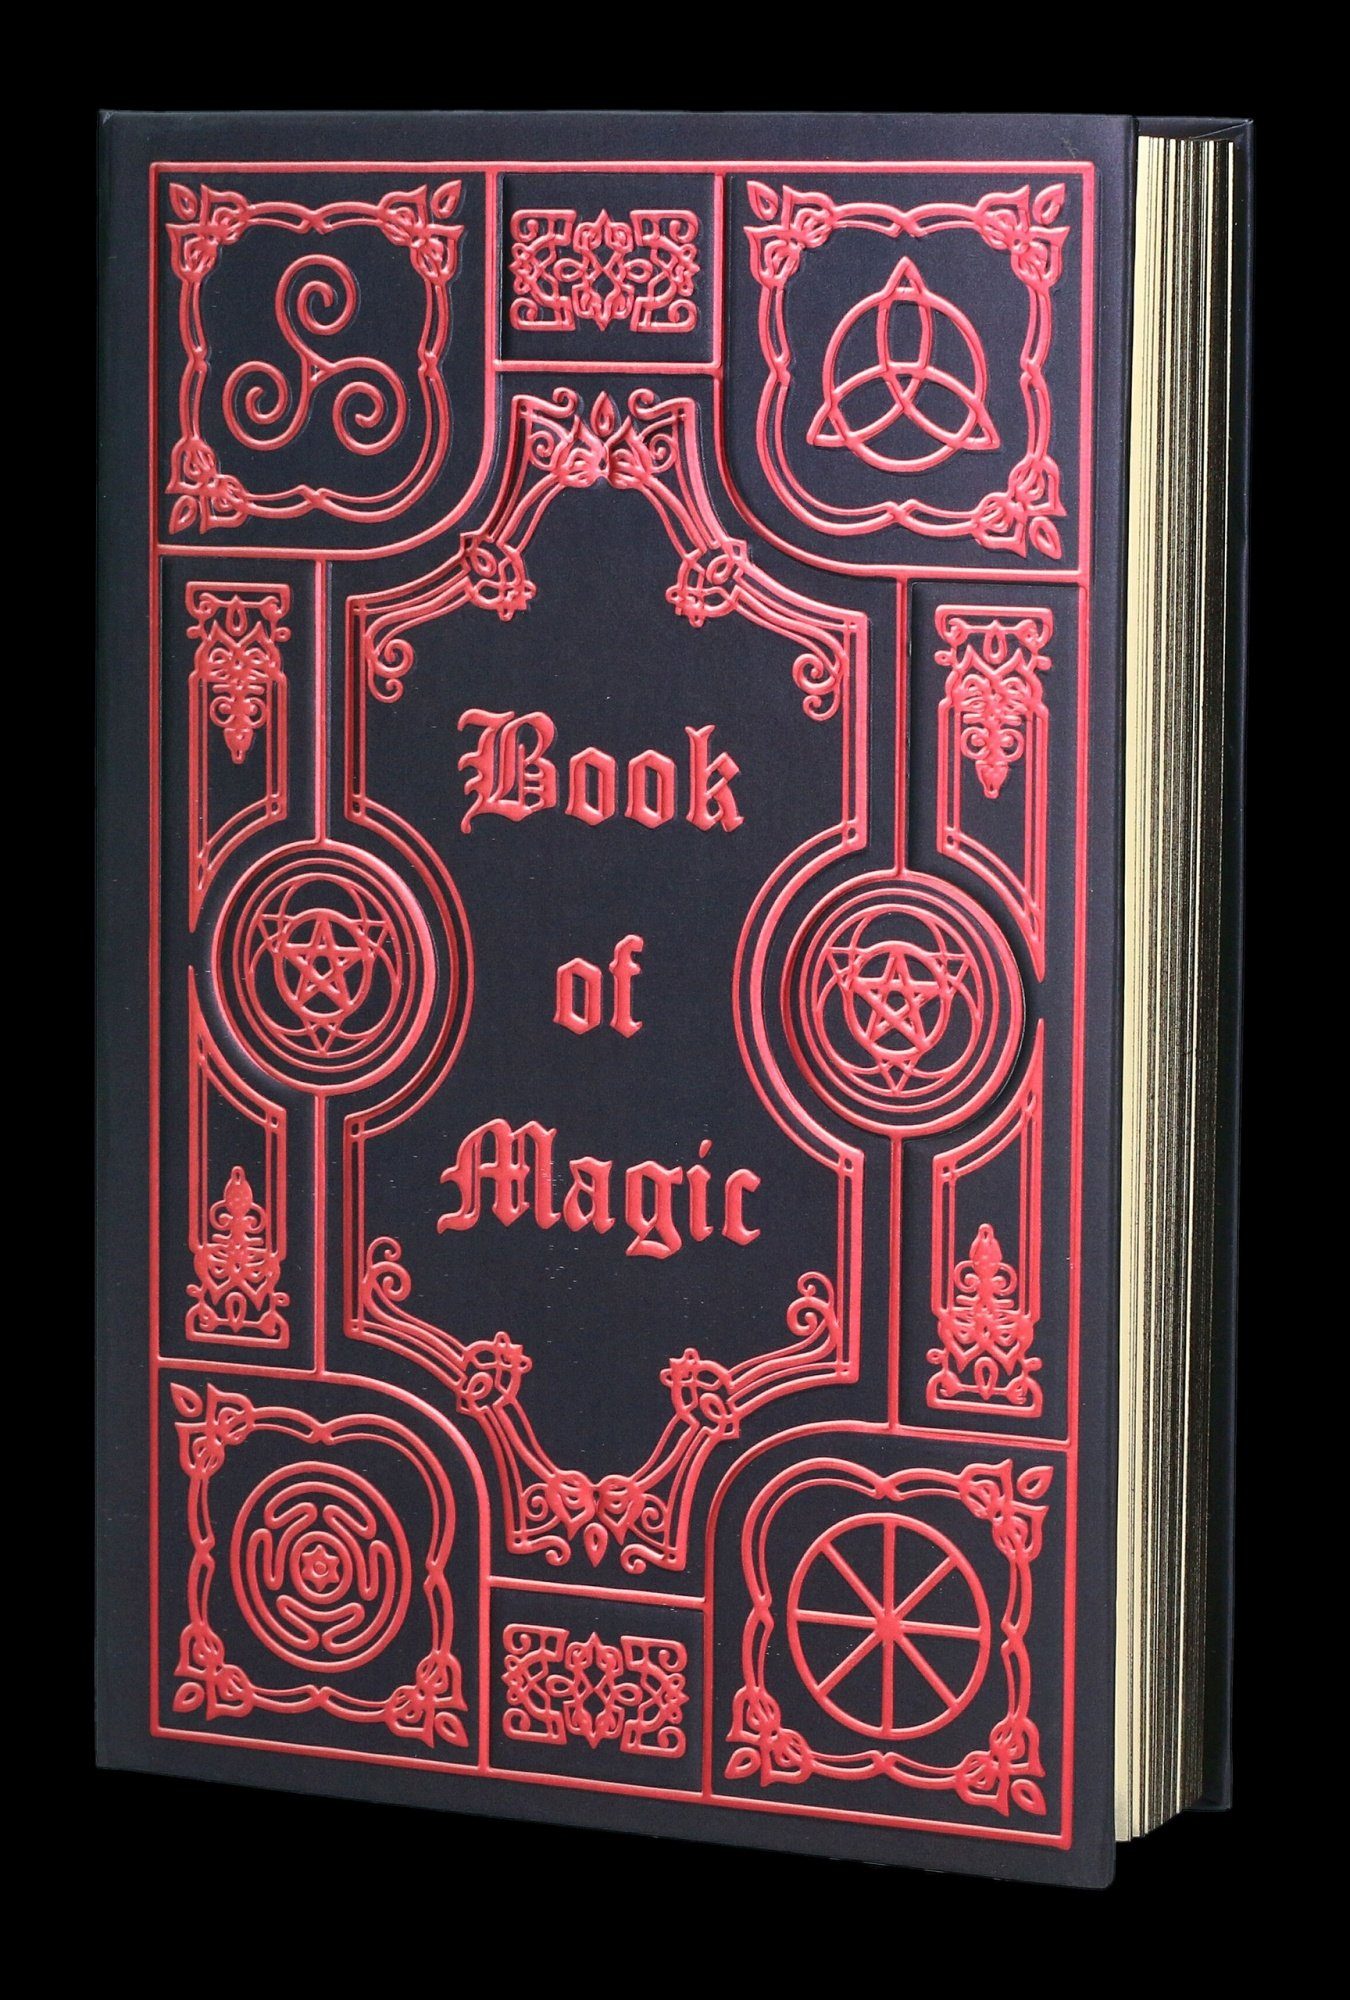 - Notizbuch Deko - GmbH Shop Fantasy Figuren Magic Notizbuch of Book